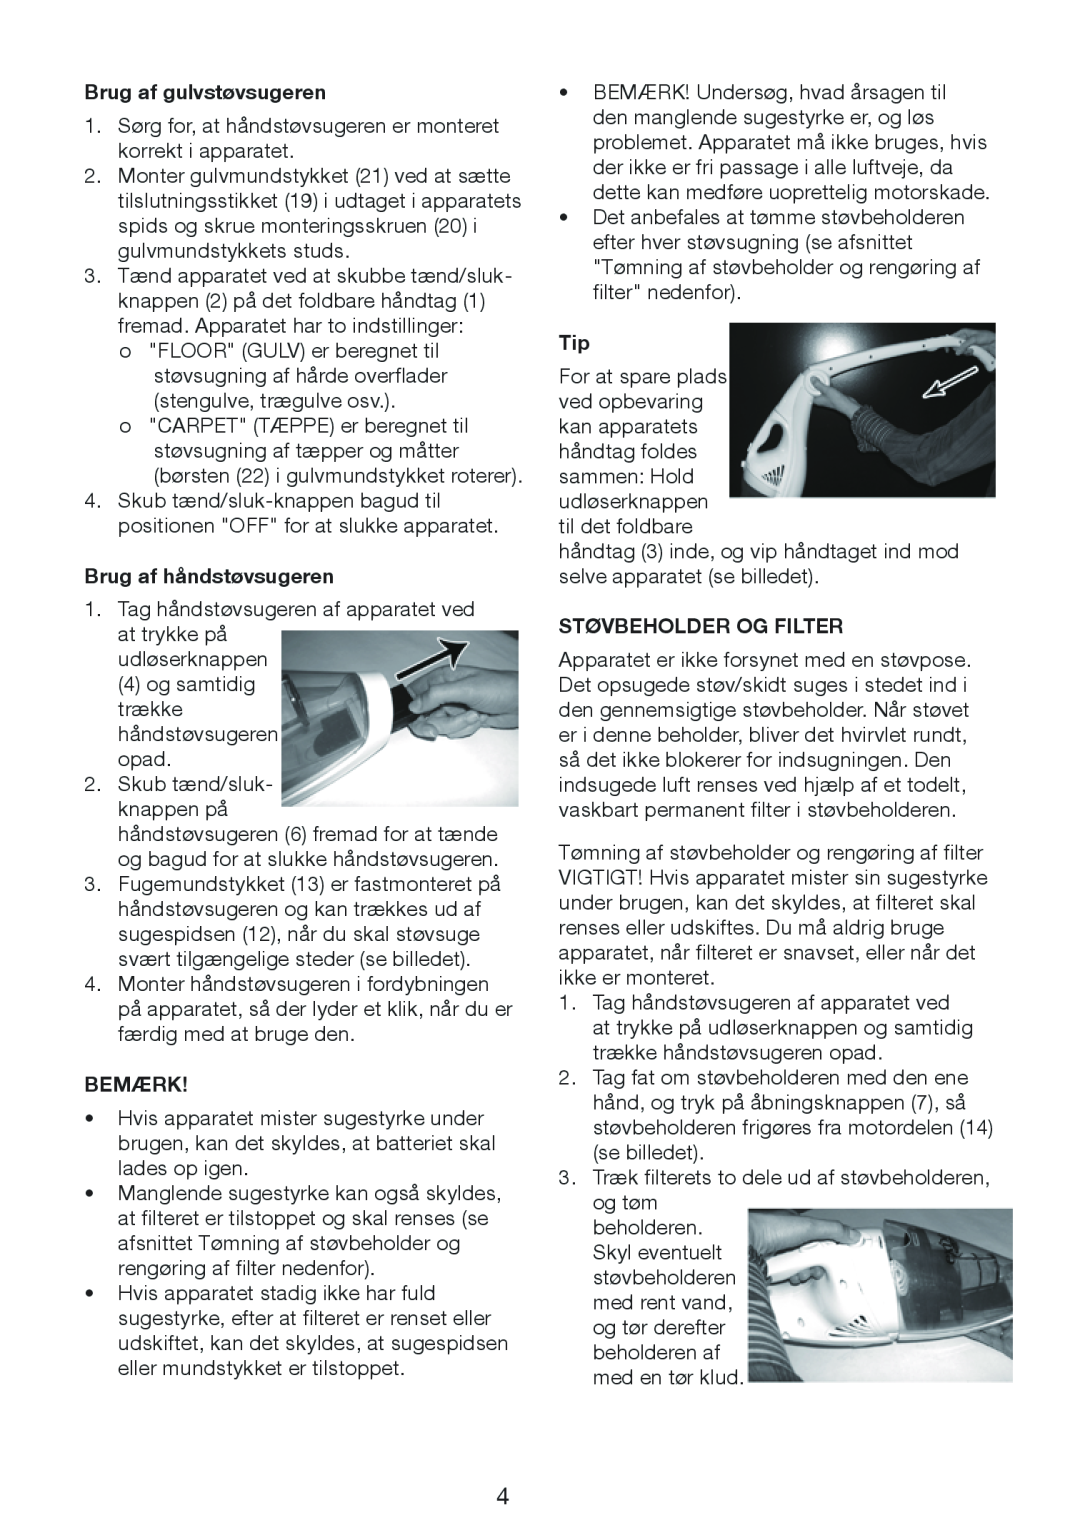 Melissa 640-132 manual Brug af gulvstøvsugeren, Brug af håndstøvsugeren, Bemærk, Støvbeholder Og Filter 